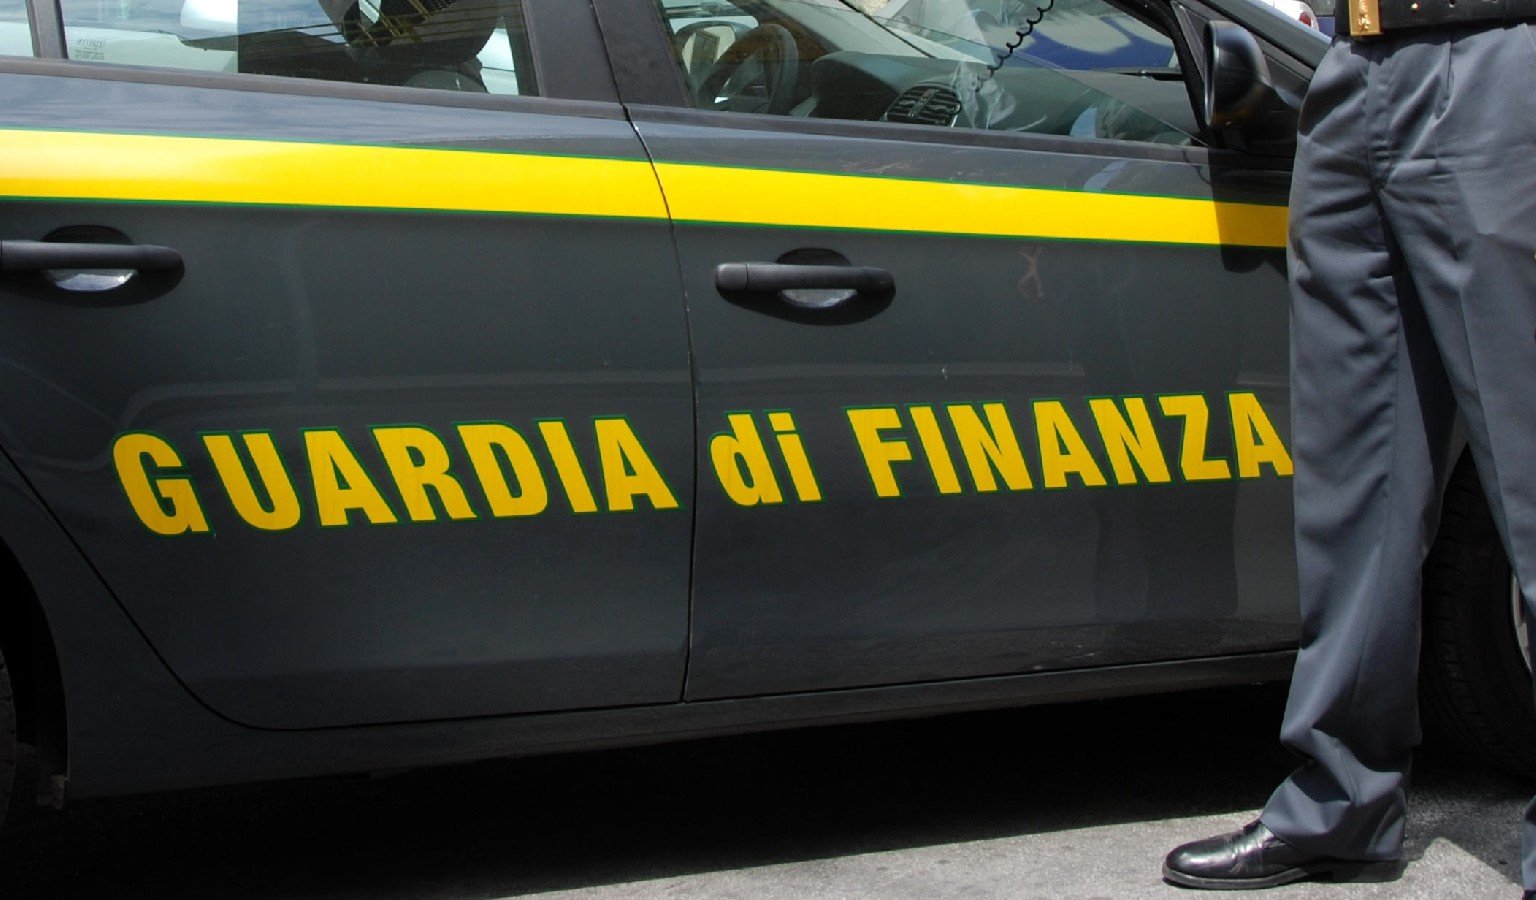 Catania, mafia: bancarotta e riciclaggio per favorire clan. Dieci misure cautelari